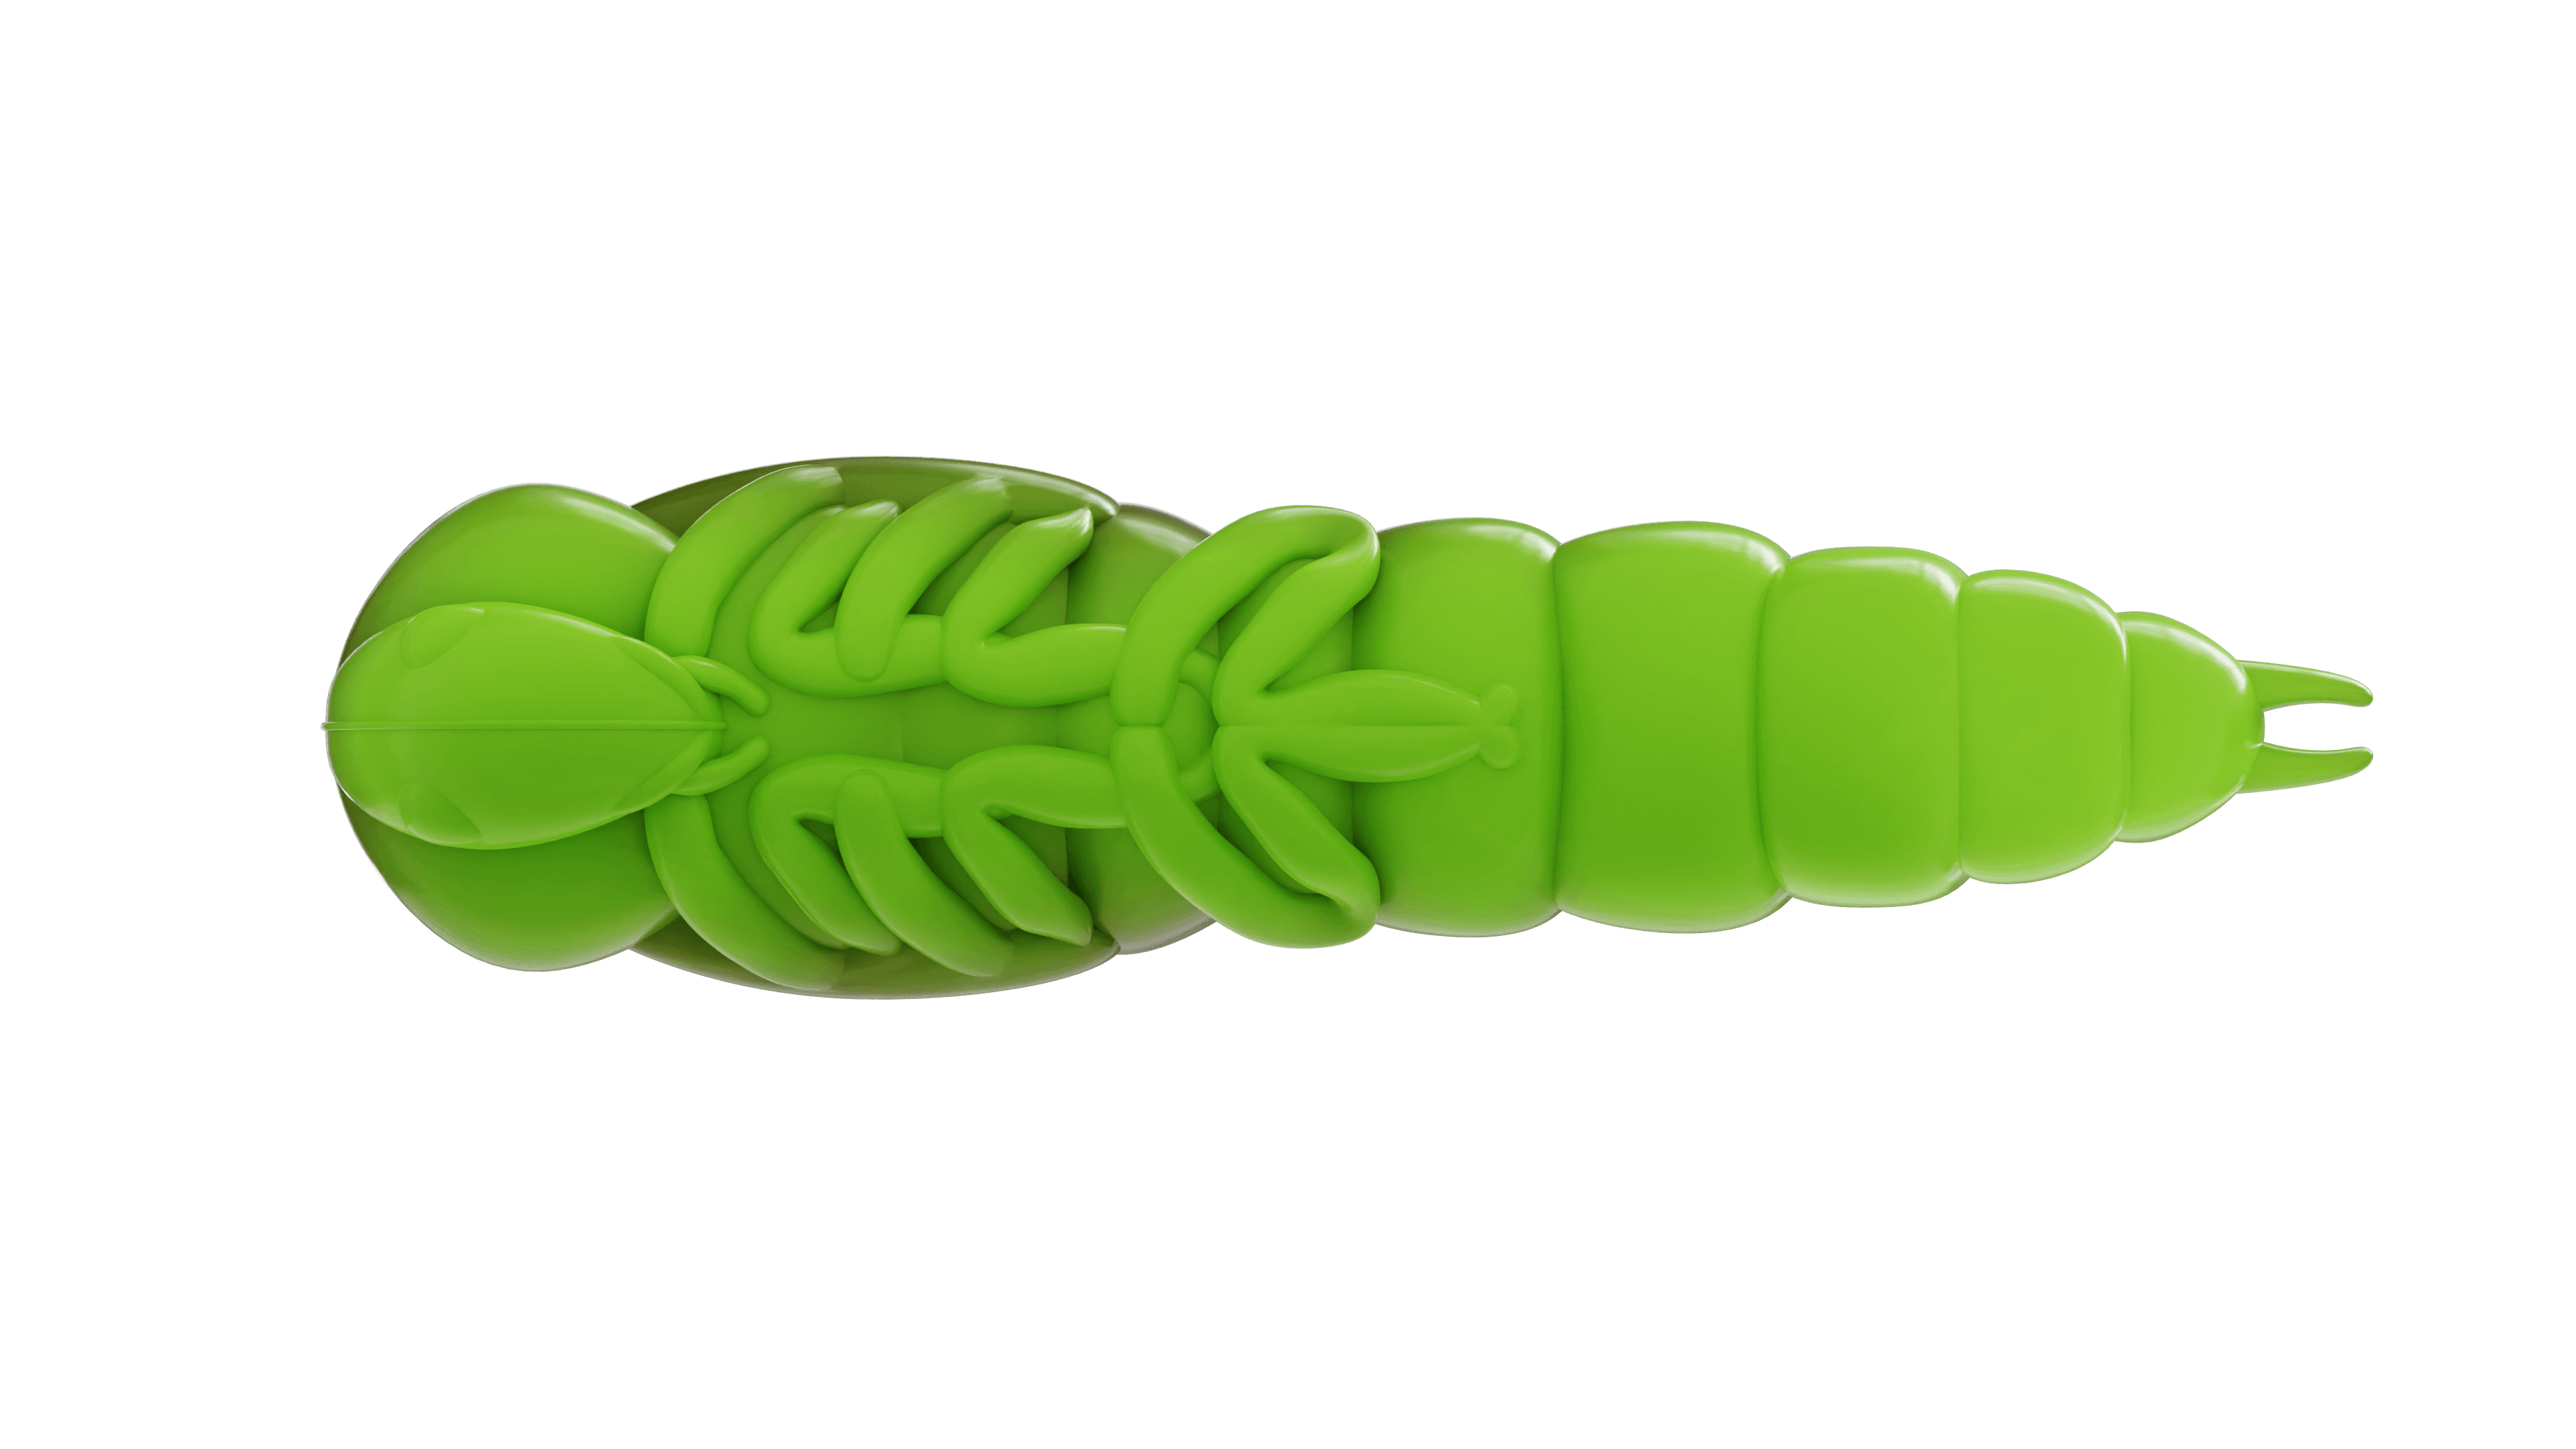 Lively Larva 40mm Brun/Chartreuse - Baitlab